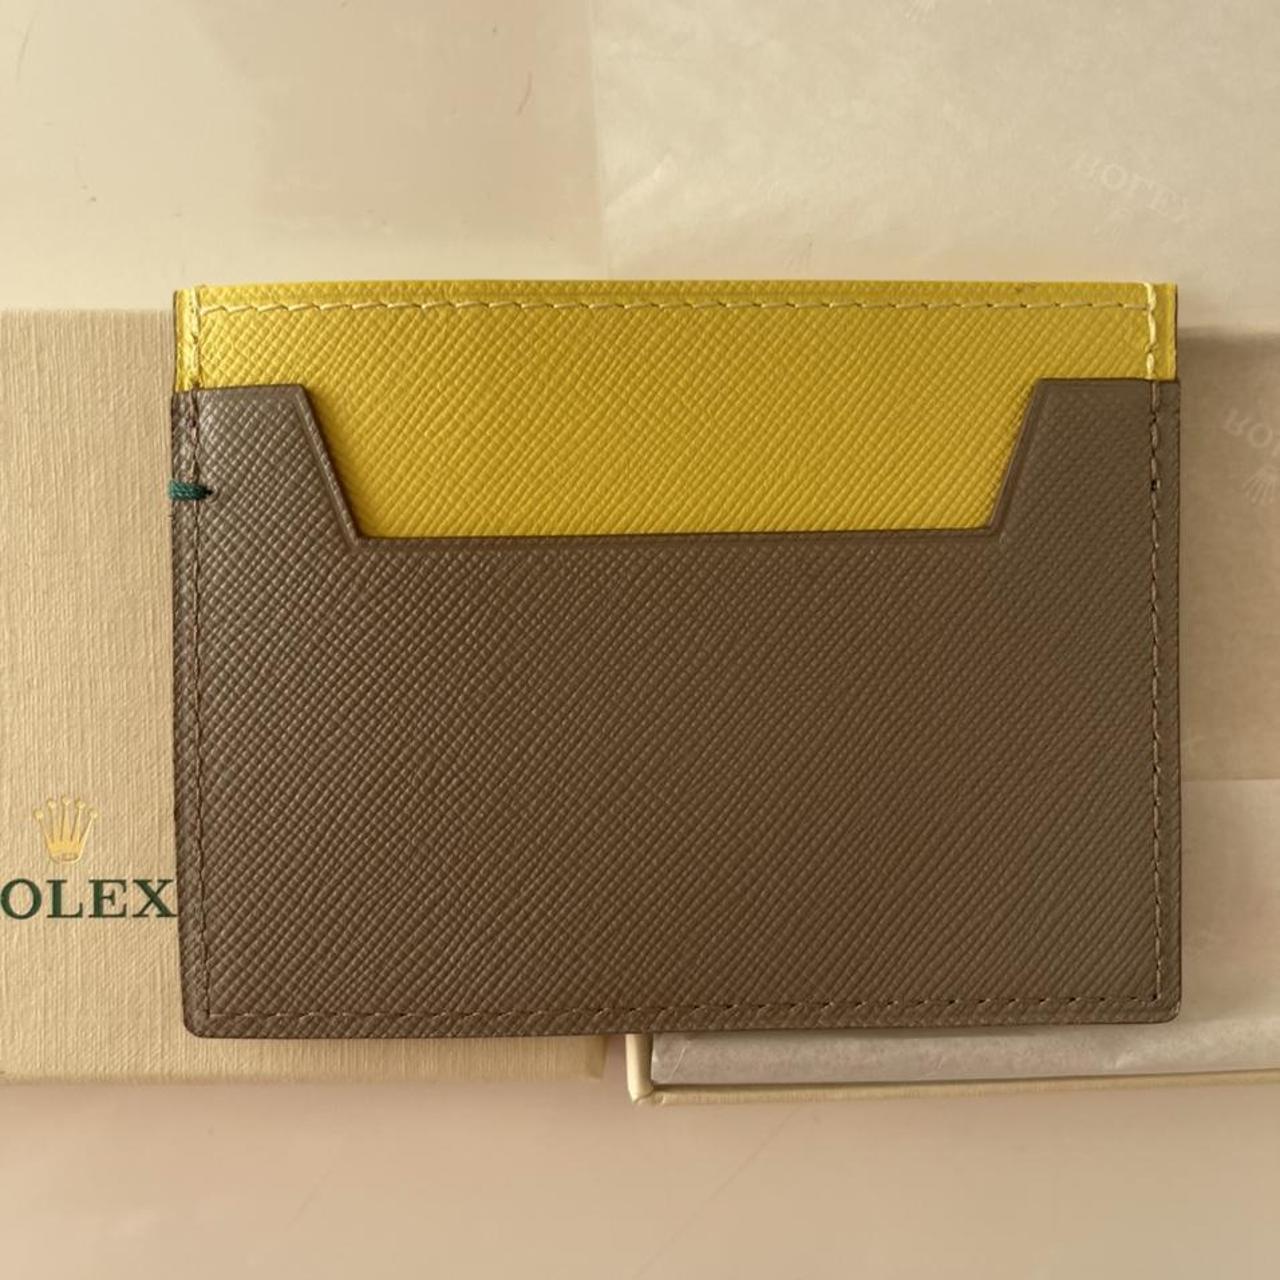 Rolex Women's Multi Wallet-purses